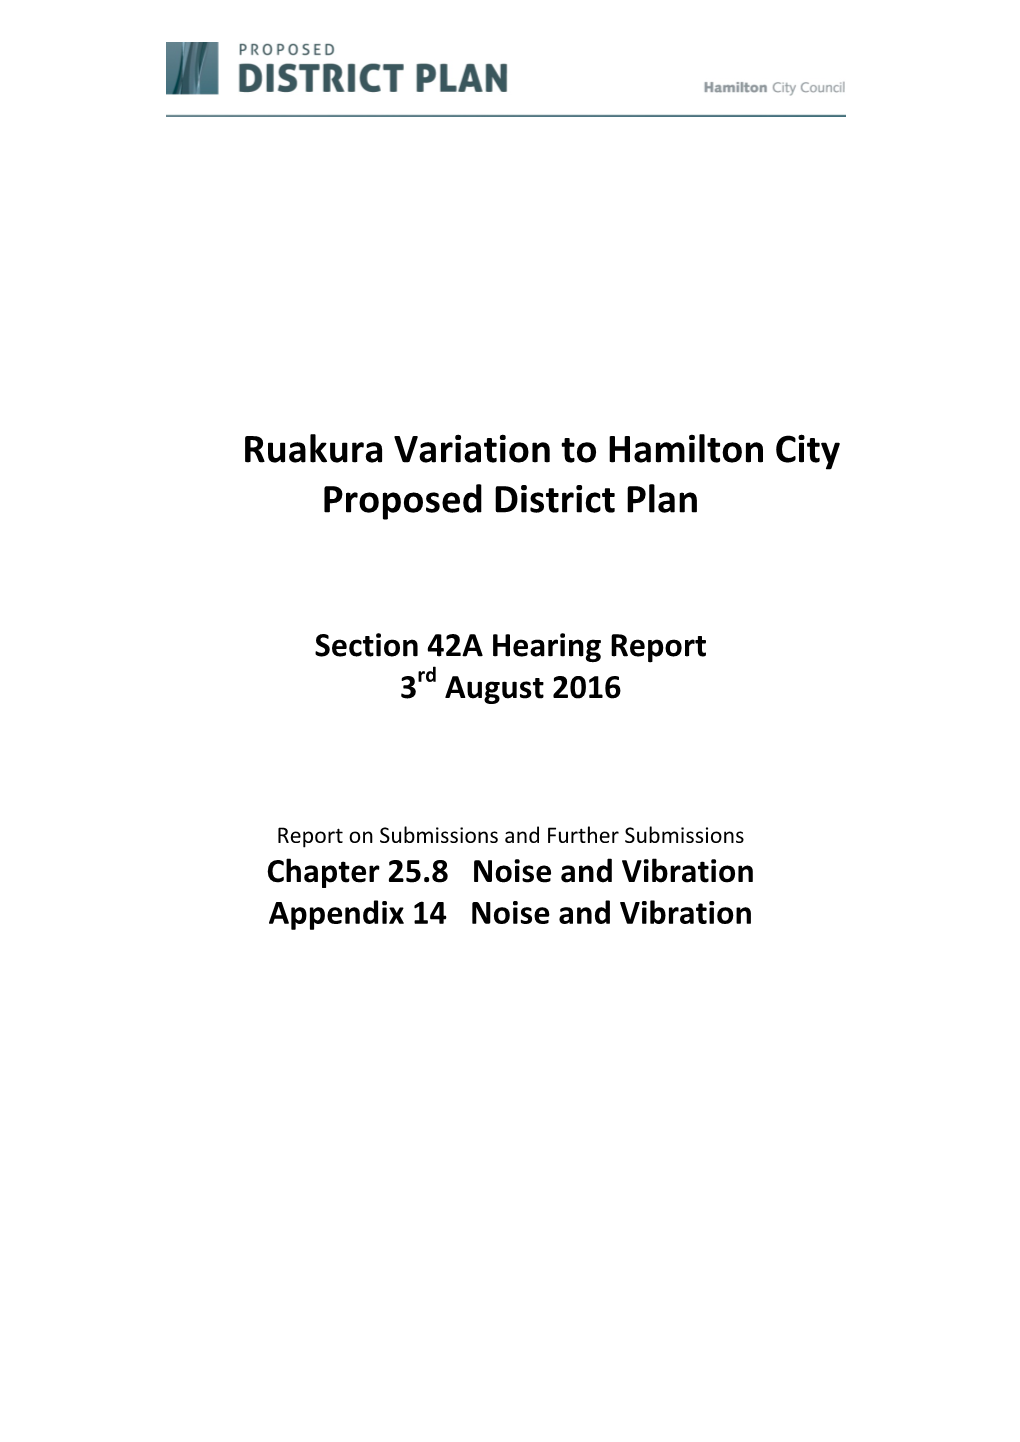 Ruakura Variation to Hamilton City Proposed District Plan